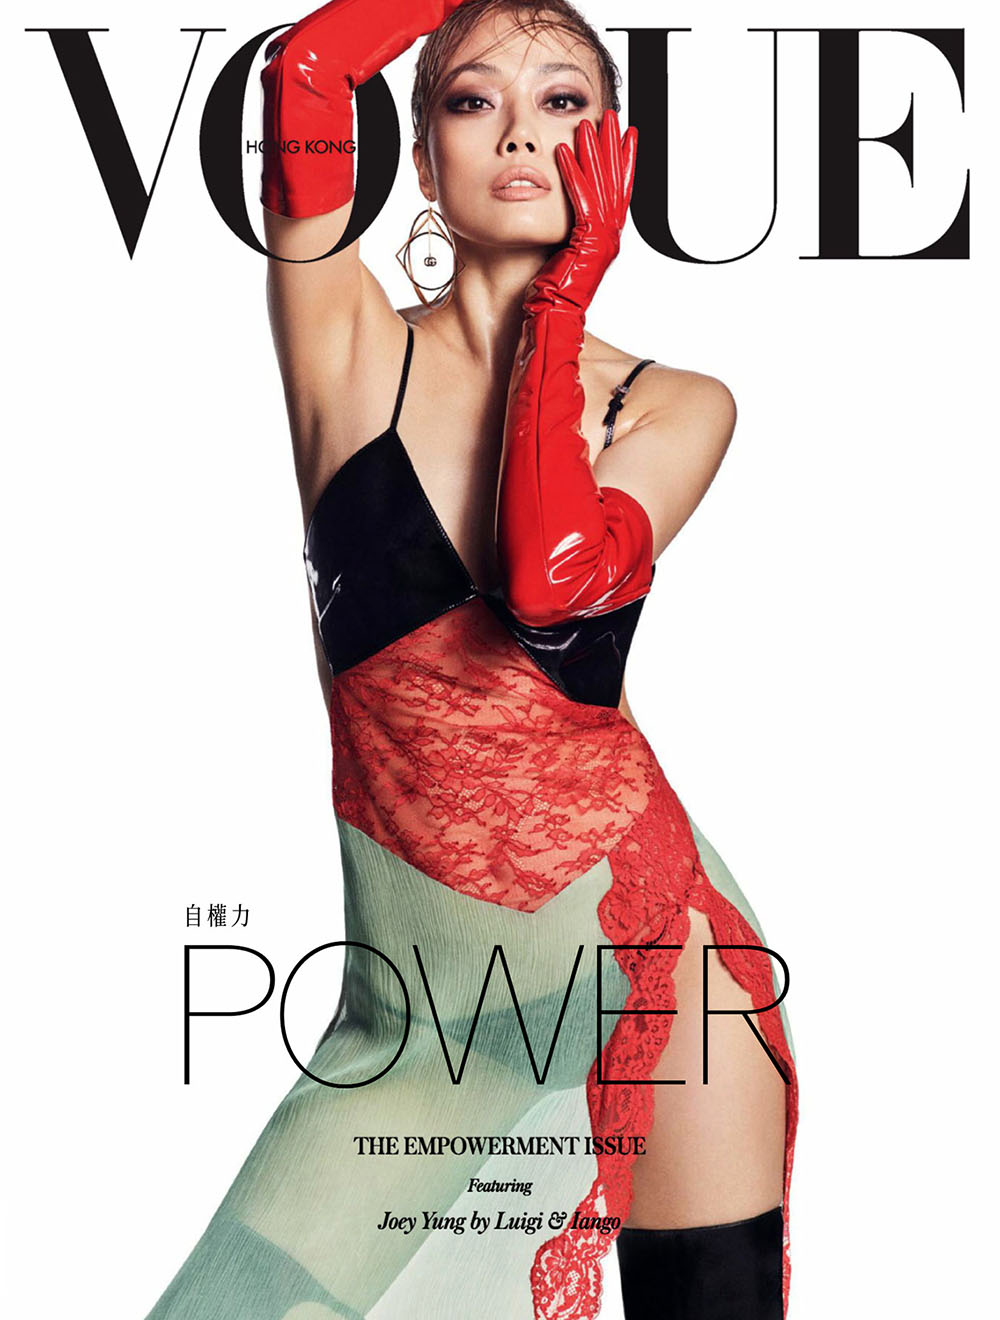 Joey Yung covers Vogue Hong Kong April 2020 by Luigi & Iango